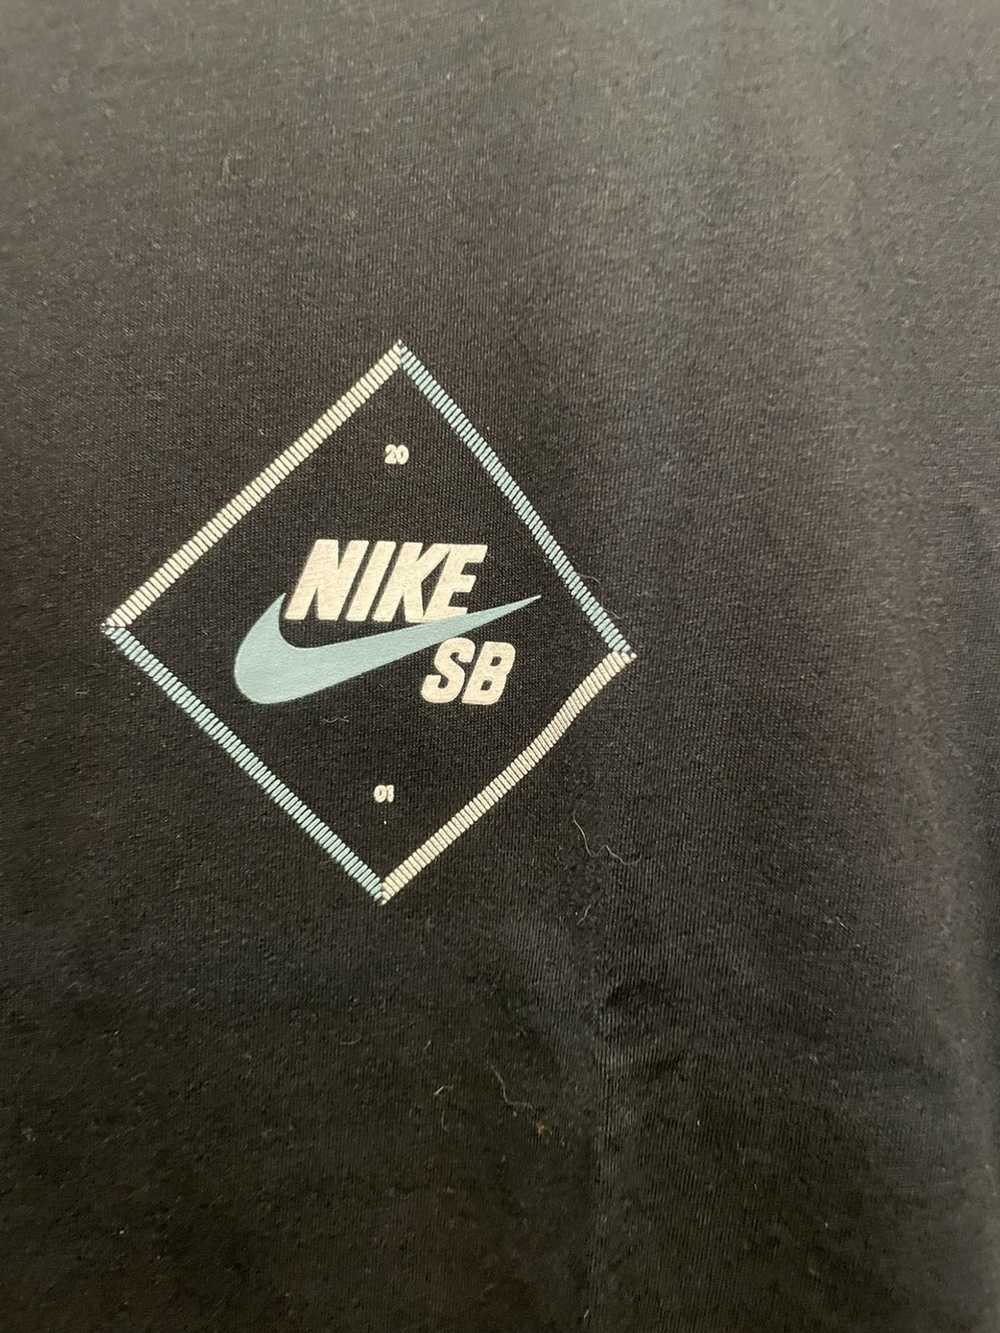 Nike Nike SB - image 3